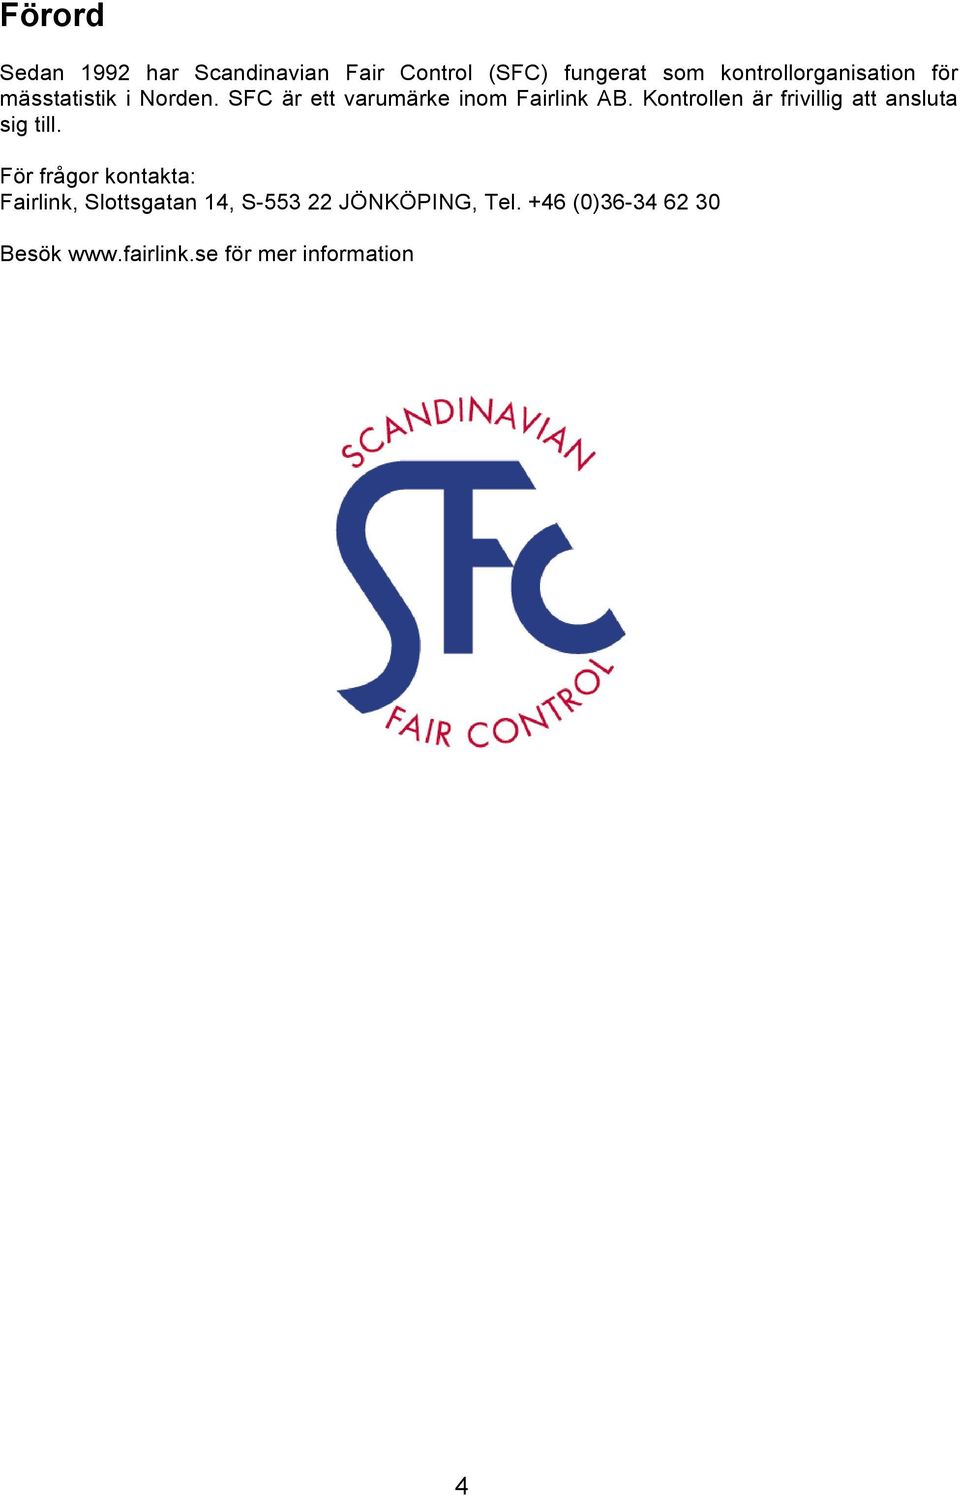 SFC är ett varumärke inom Fairlink AB. Kontrollen är frivillig att ansluta sig till.